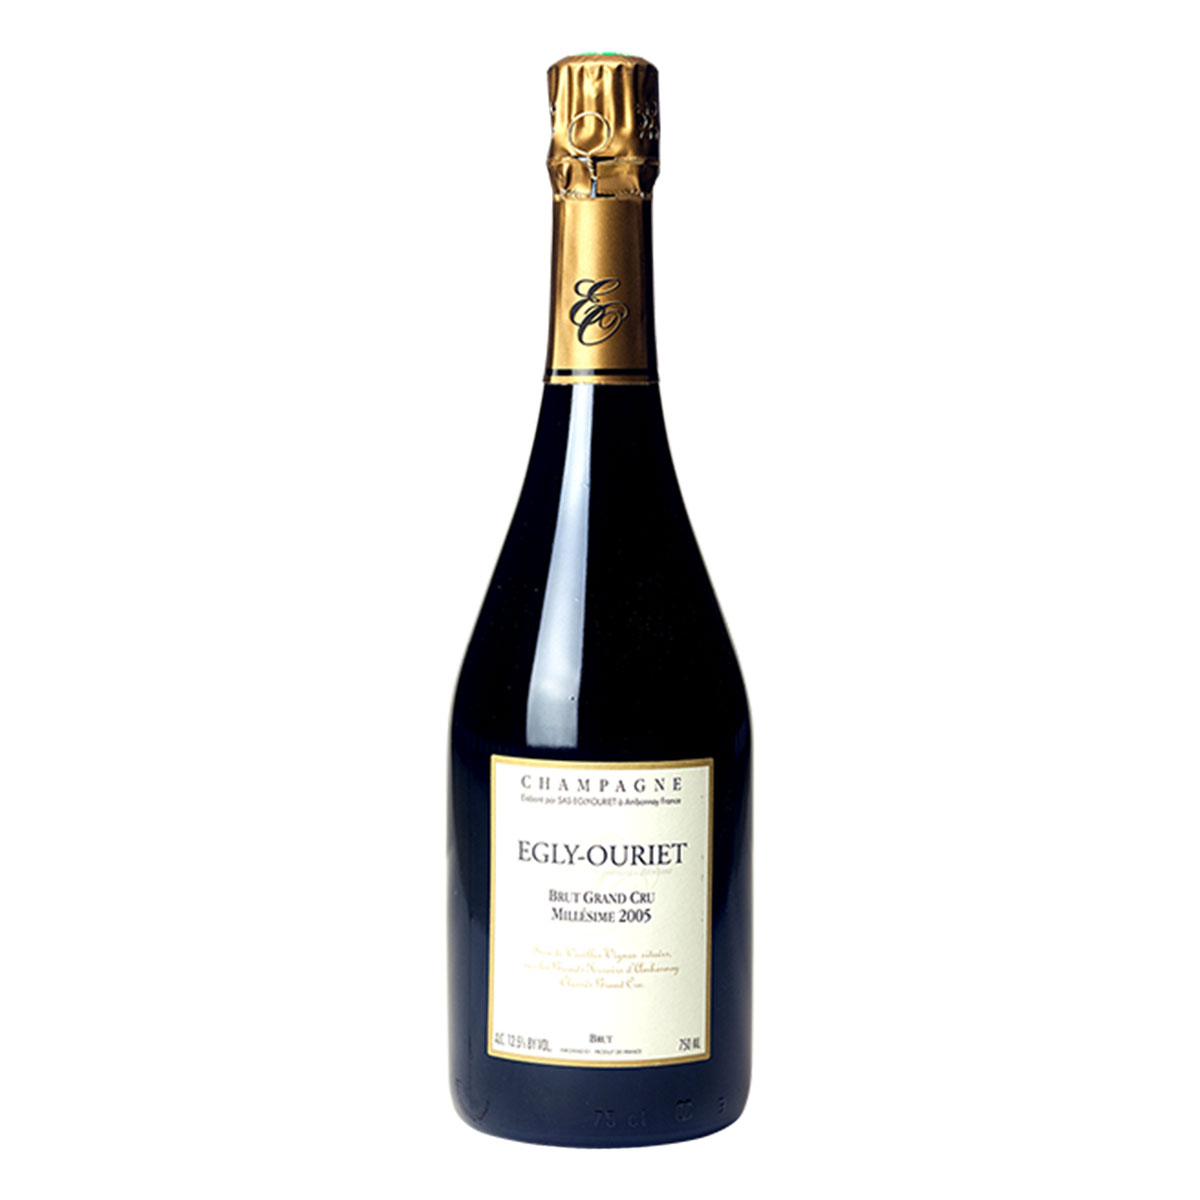 【送料無料】ワイン シャンパーニュ《エグリ・ウーリエ ブリュット・グラン・クリュ・ミレジム 2005年》フランス 白泡 スパークリング シャンパン ギフト お祝い おすすめ パーティー 定番 フィラディス